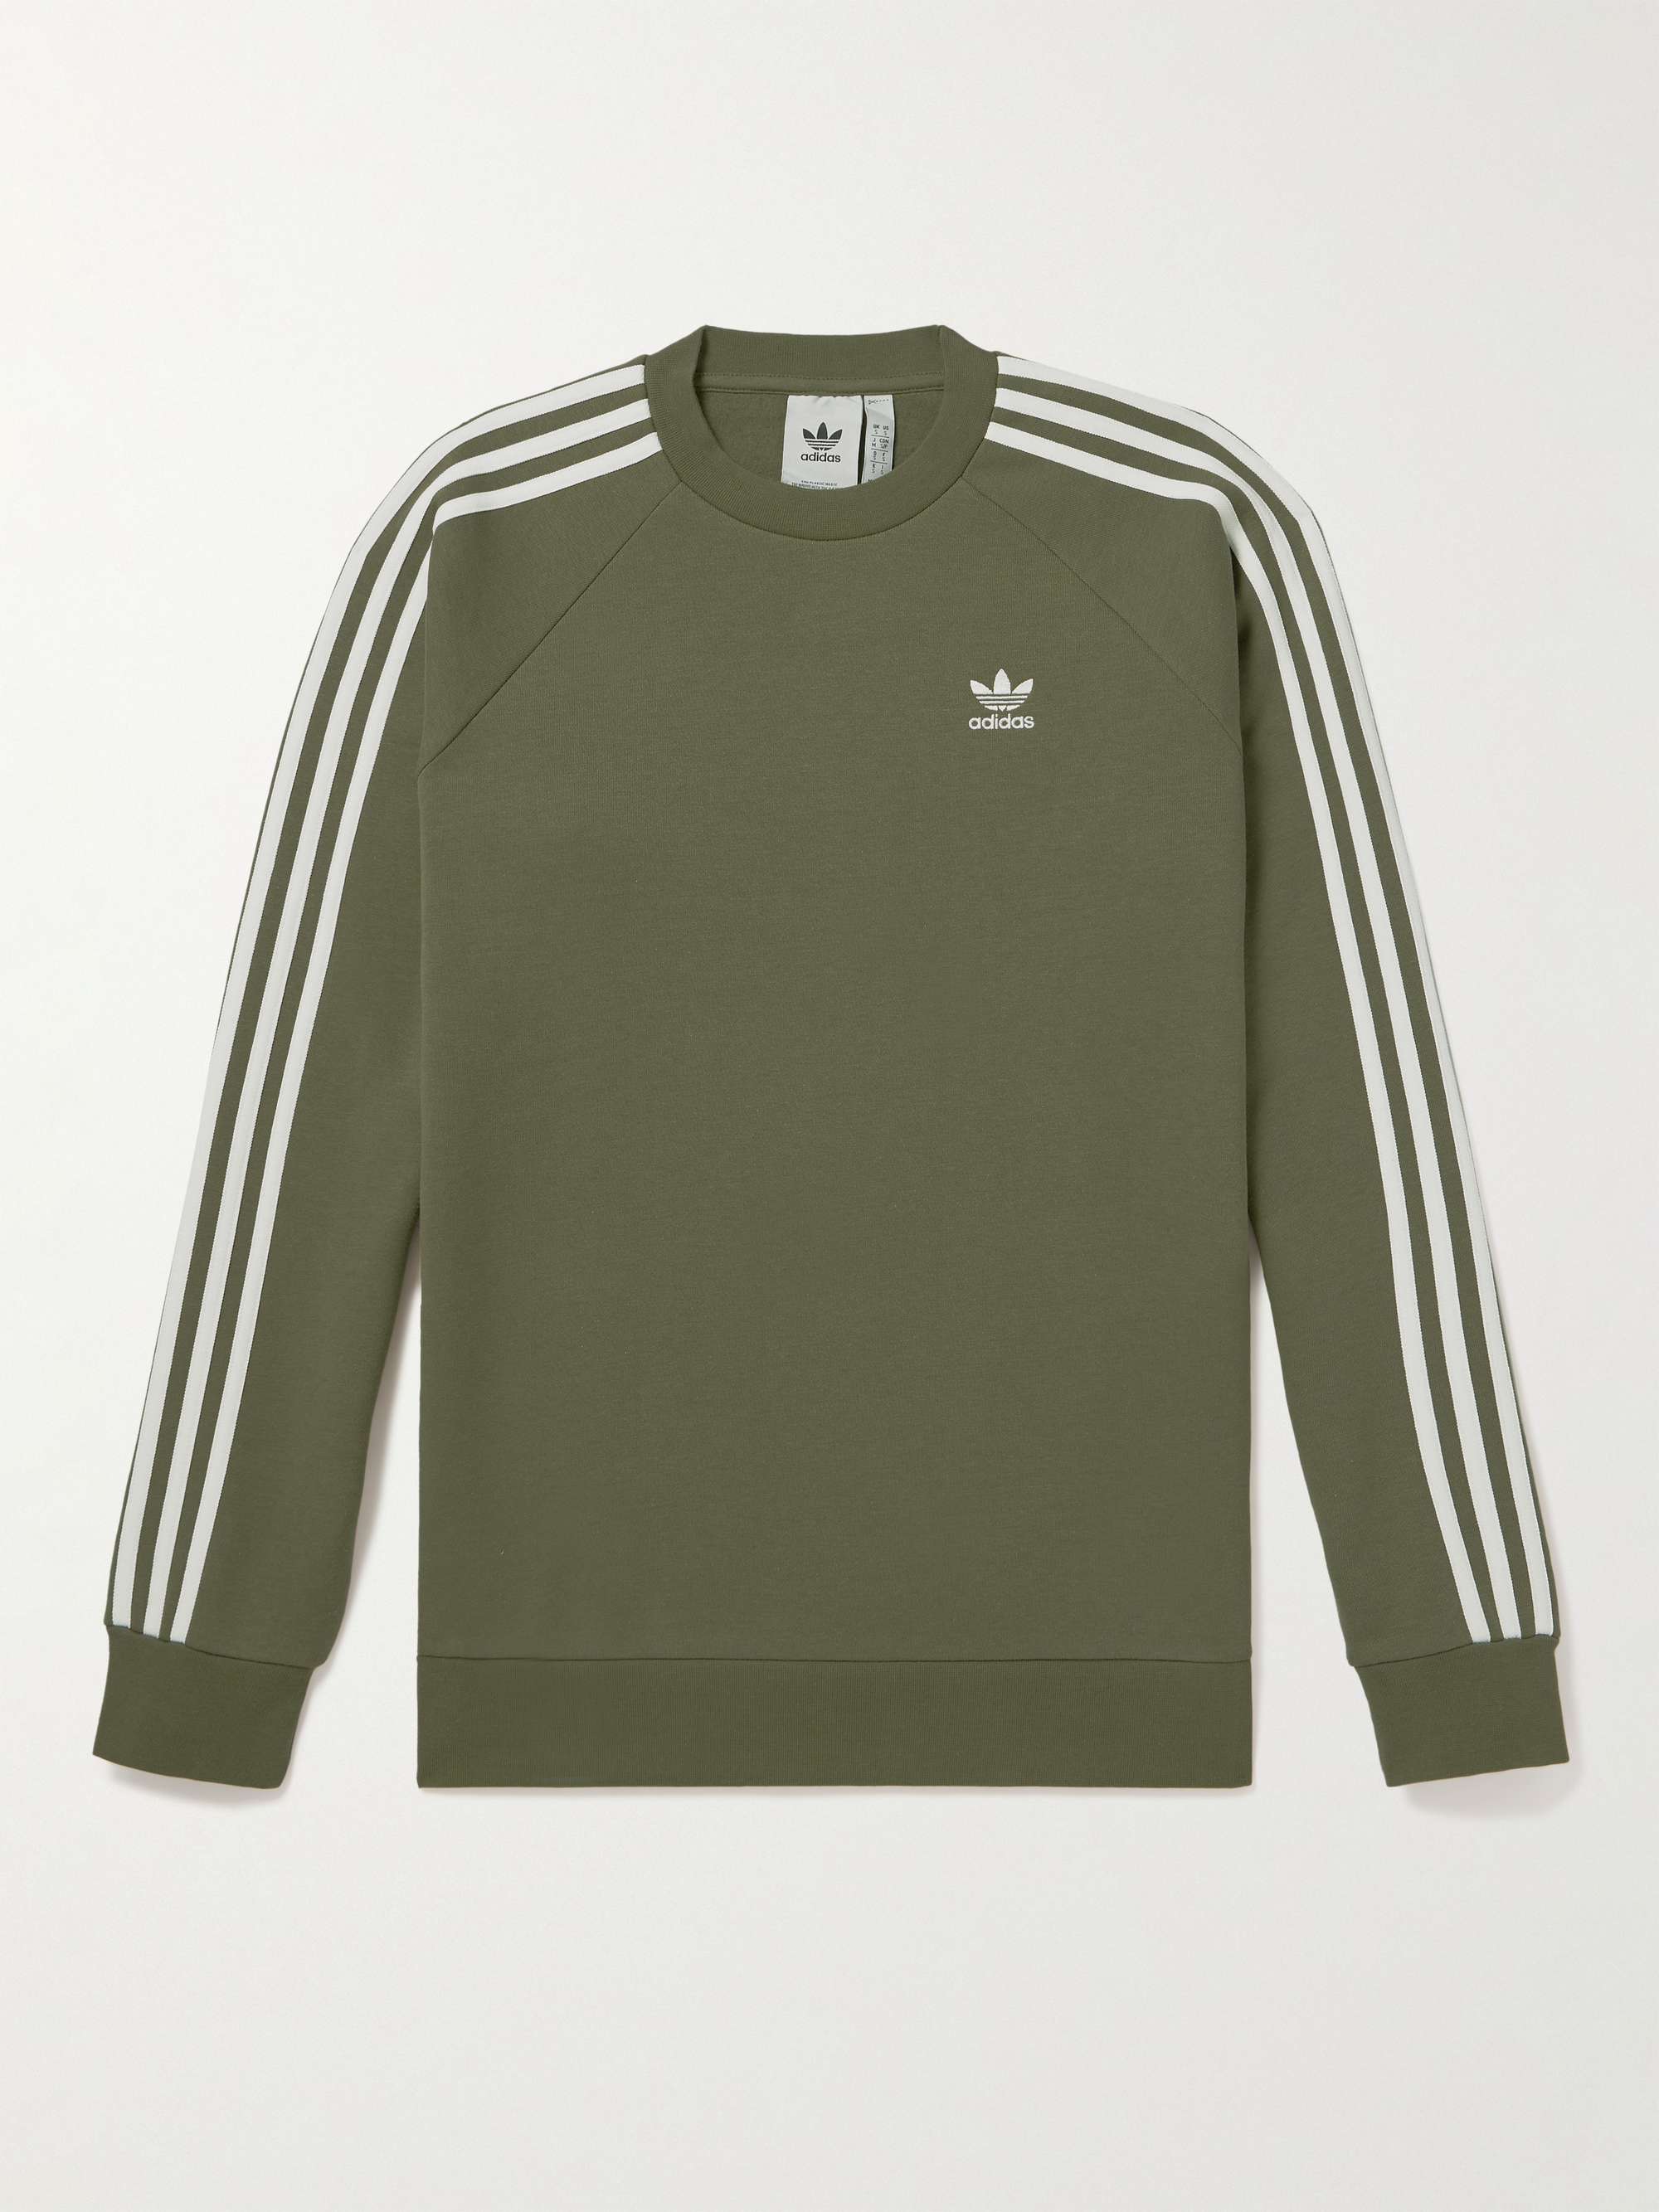 ADIDAS ORIGINALS Striped Cotton-Blend Jersey Sweatshirt | MR PORTER